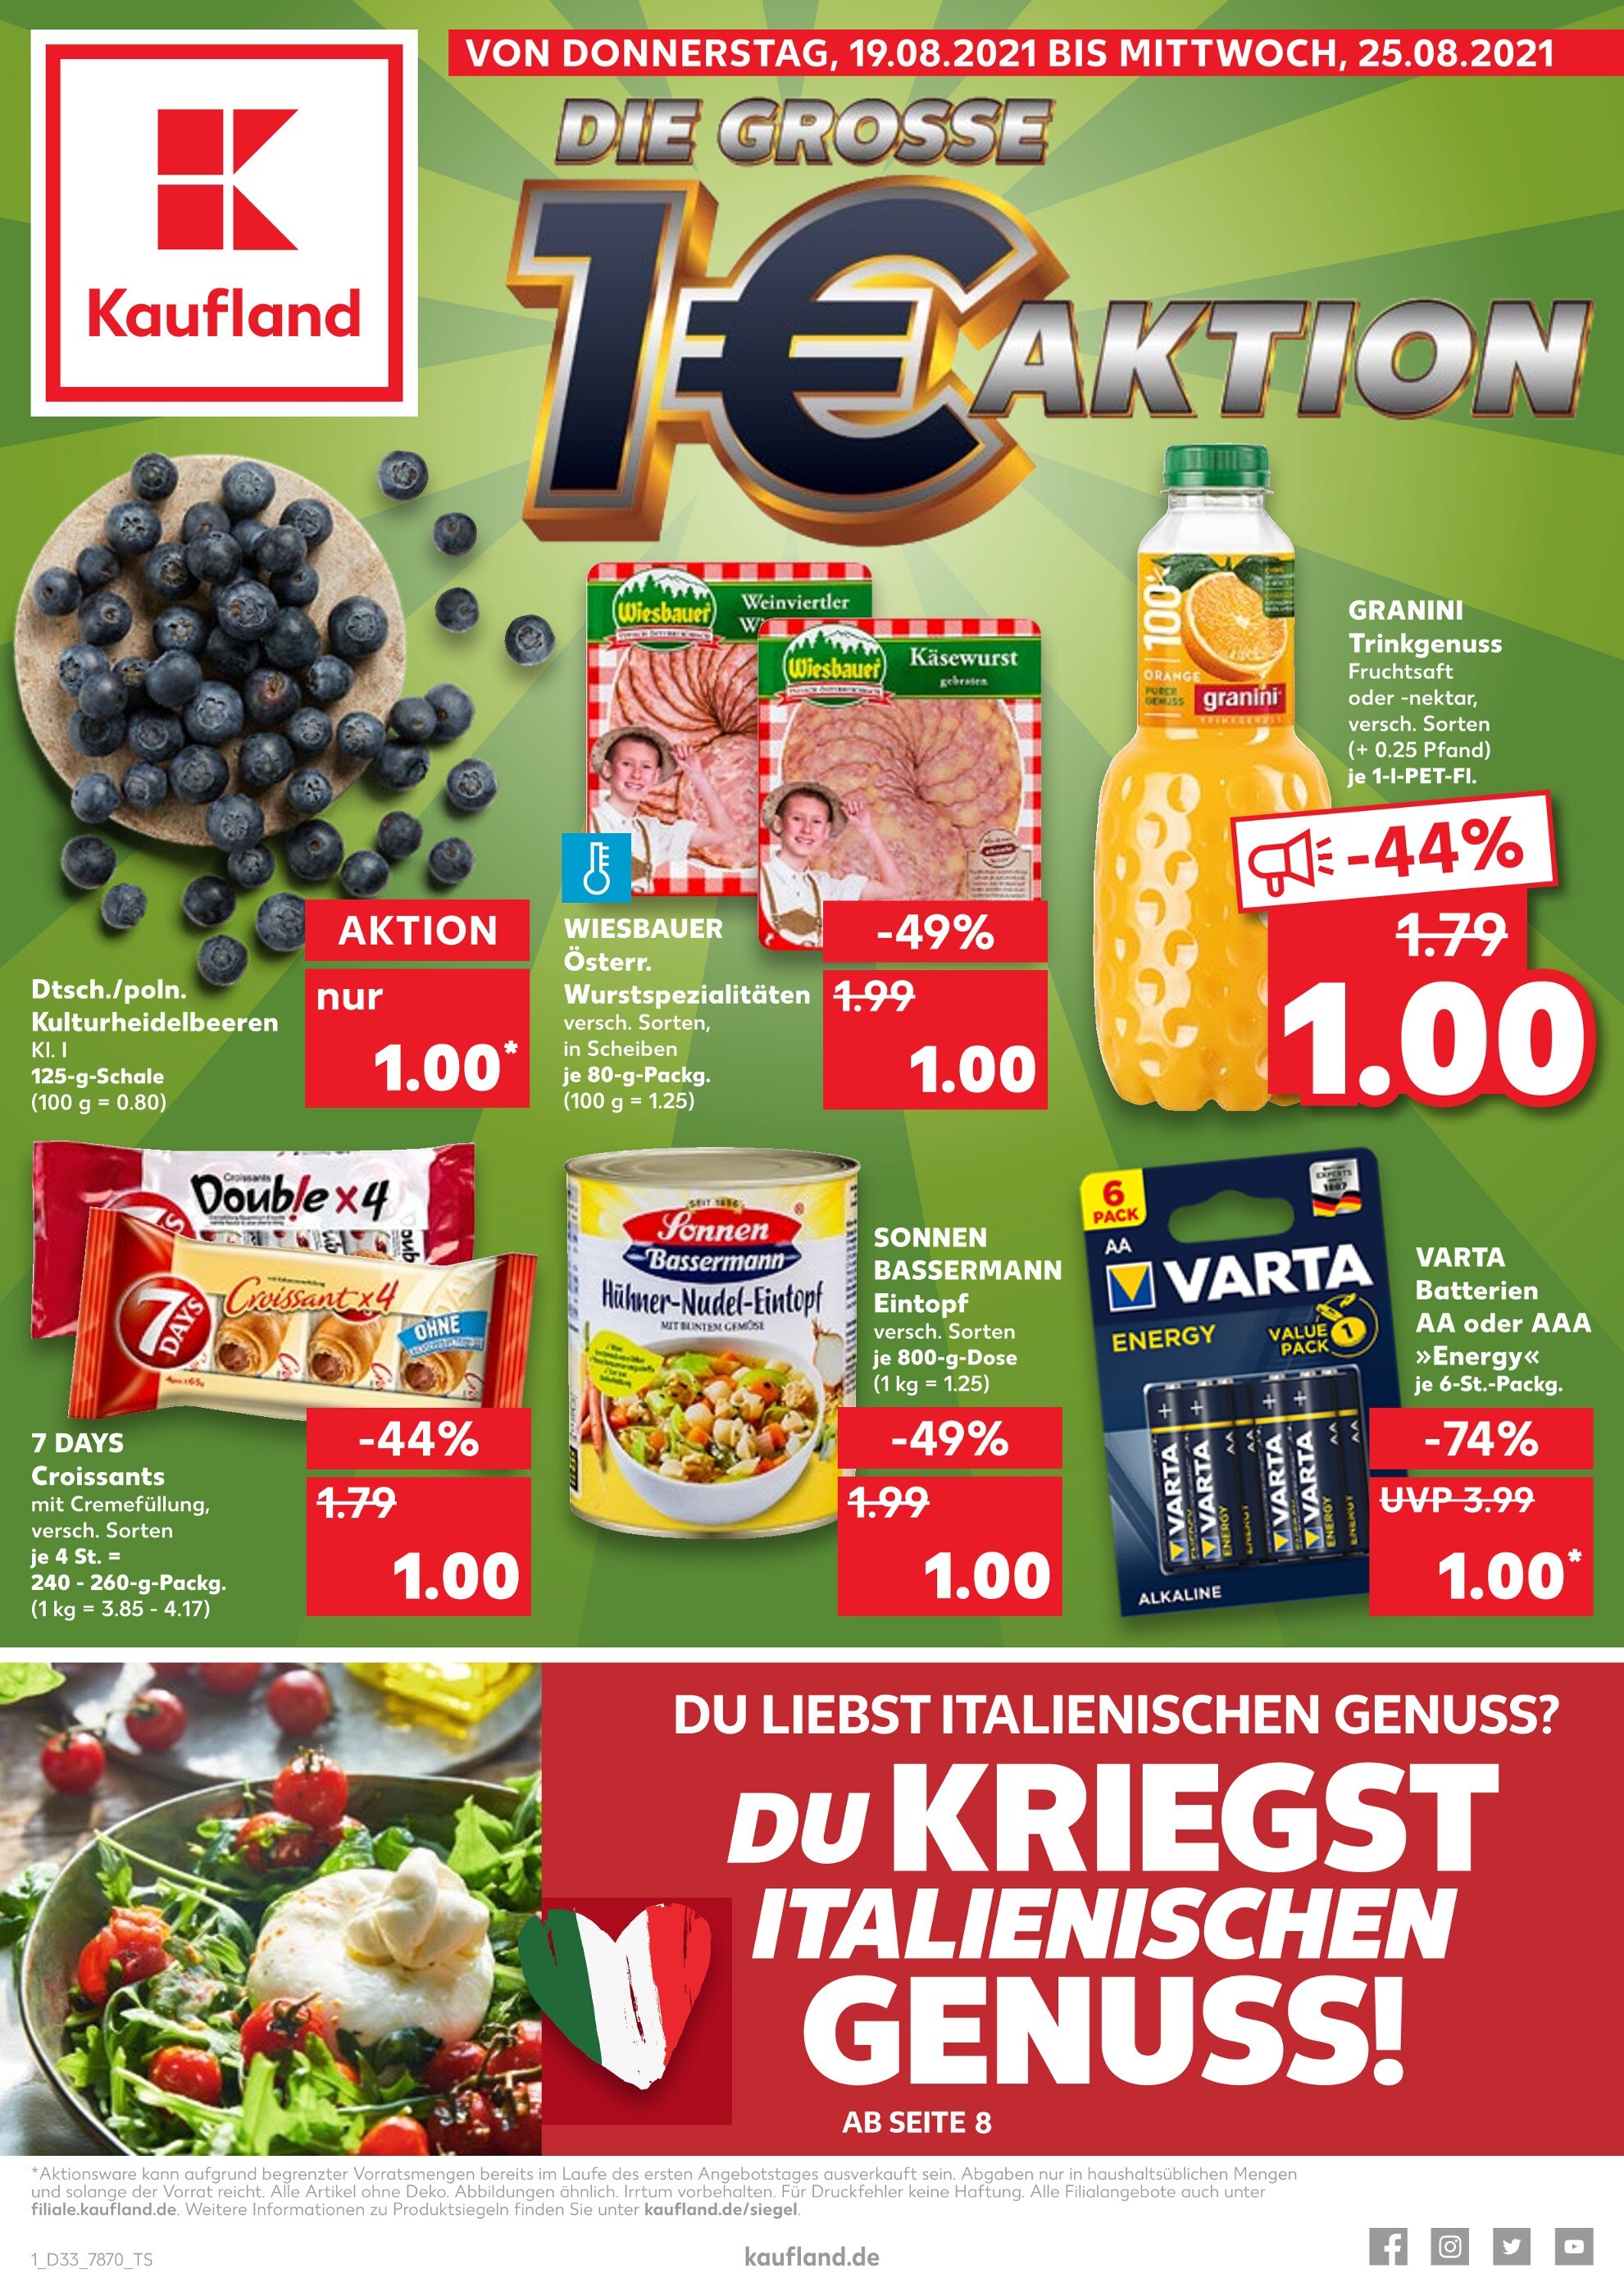 Kaufland Heidelberg - Aktuelle Angebote im Kaufland Prospekt der Woche